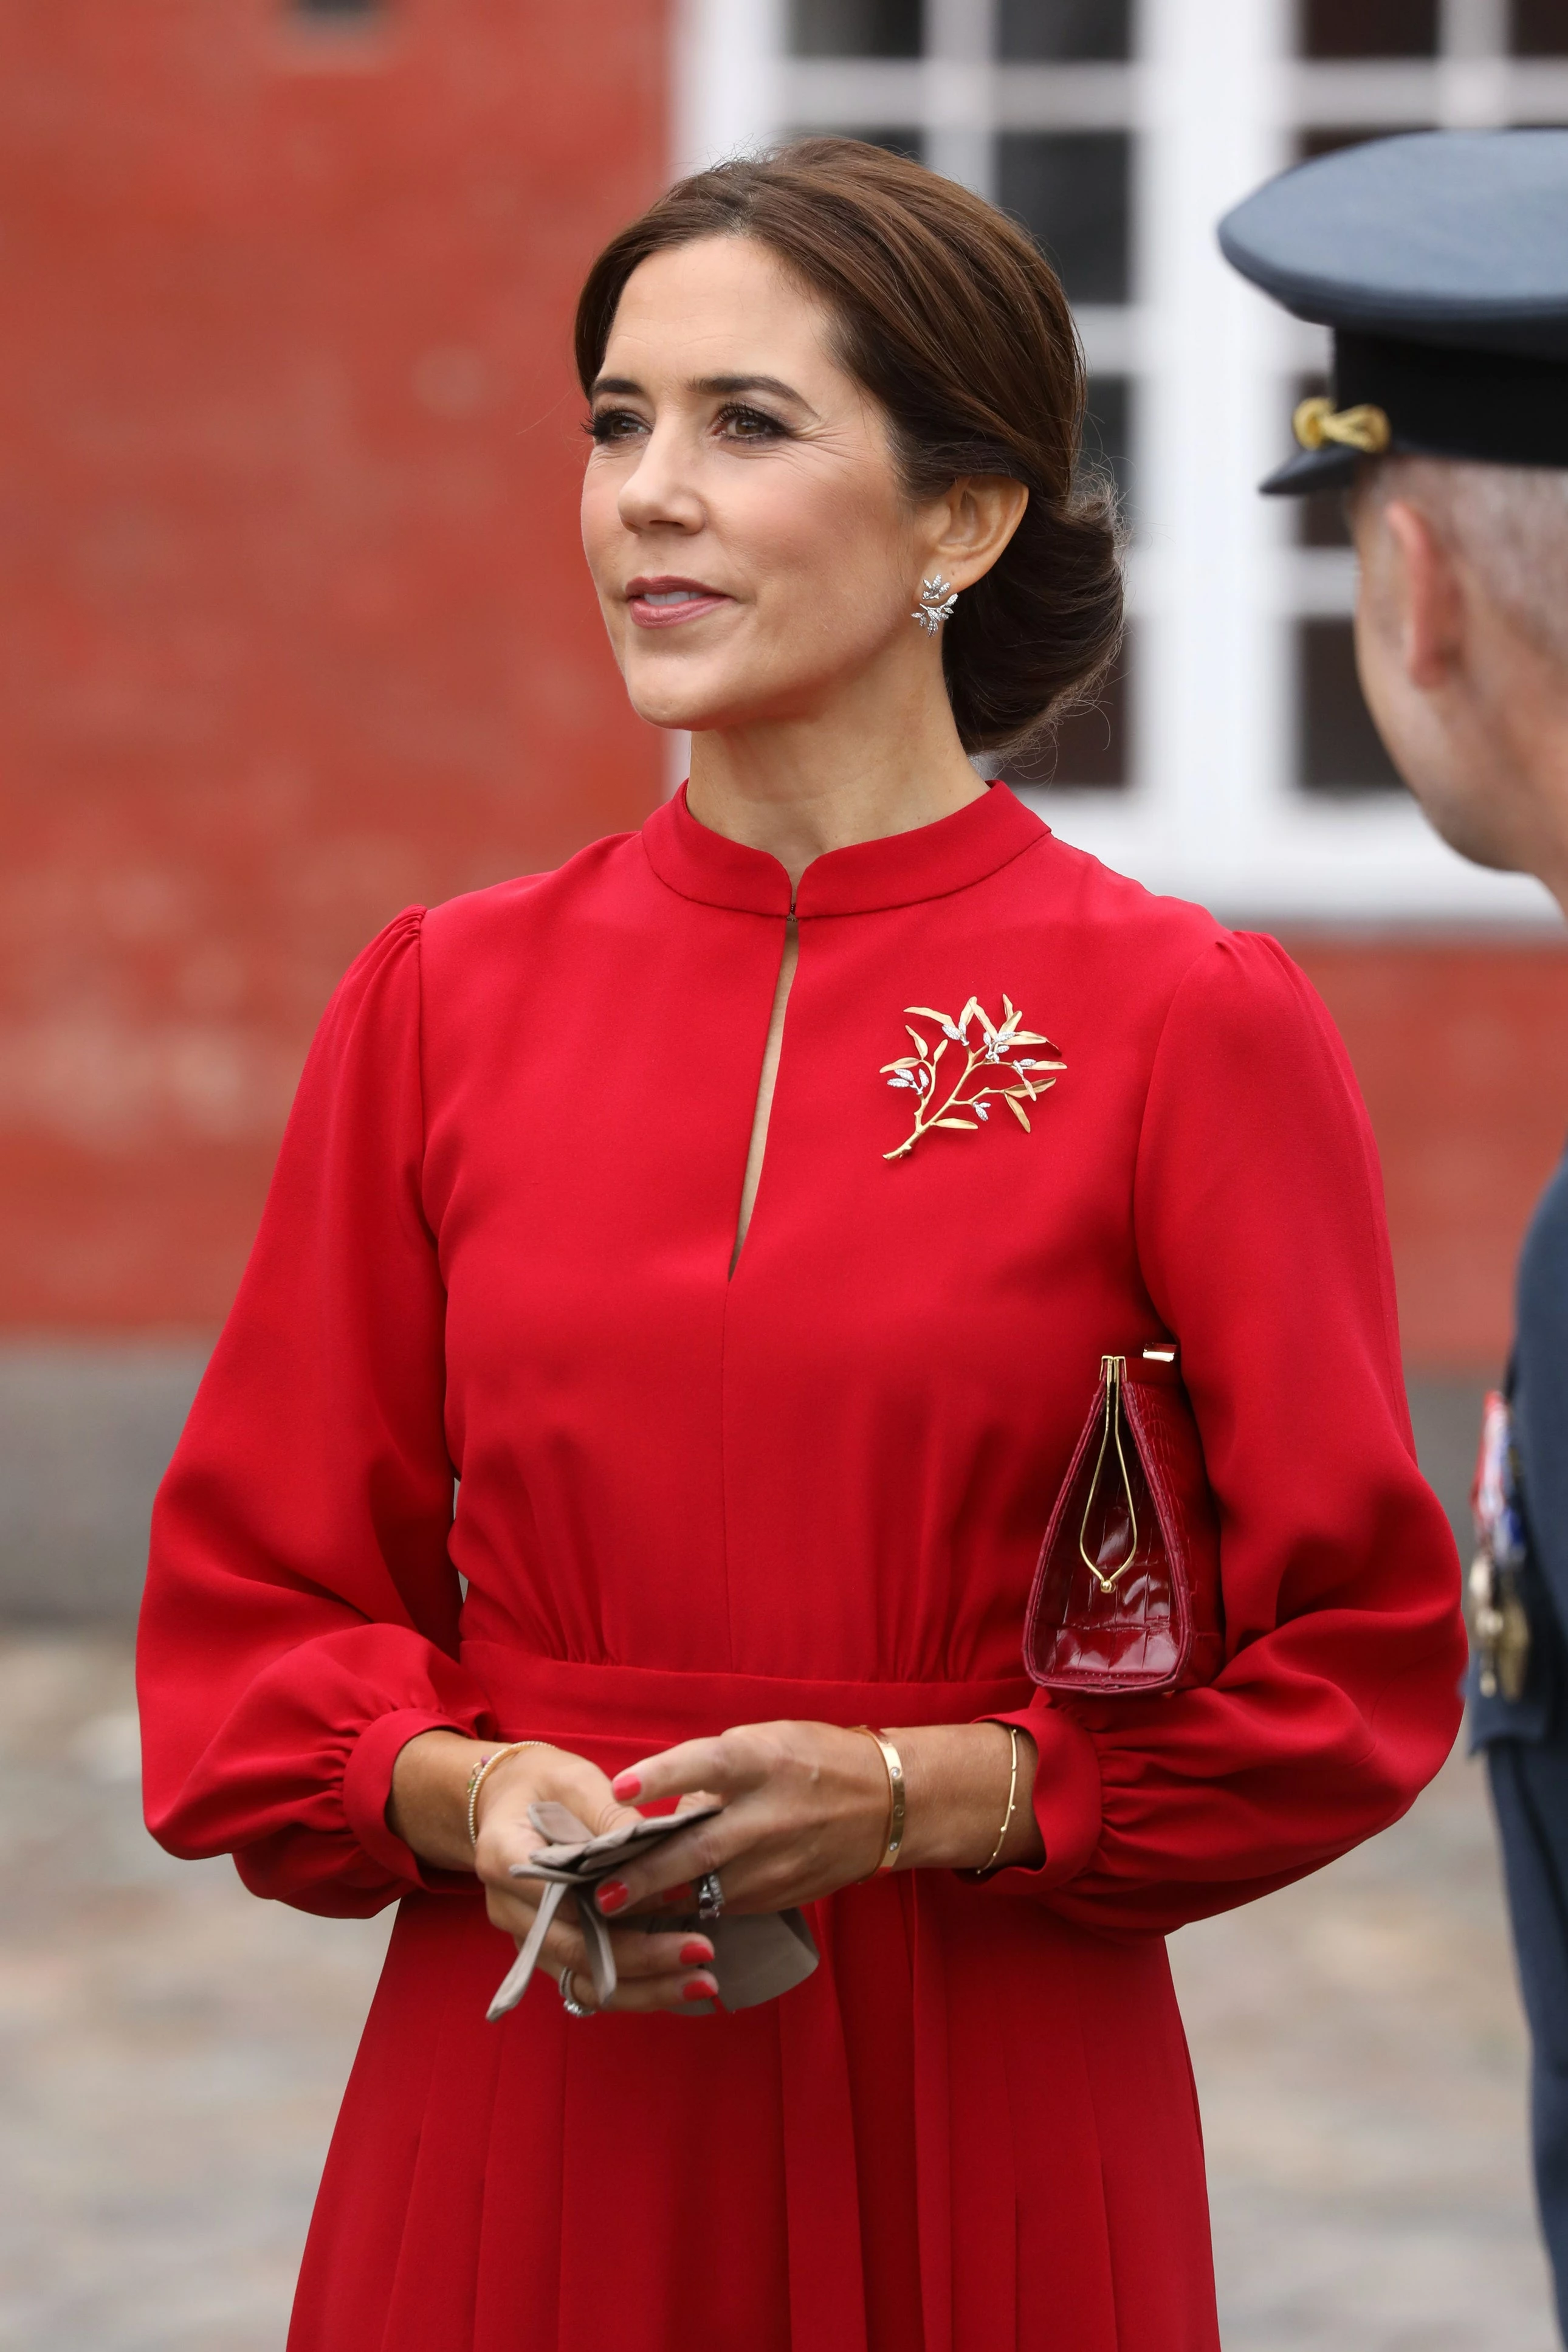 Серпень 2018 року.
На церемонію покладання вінків у Копенгагені принцеса Марія вдягла червону сукню.